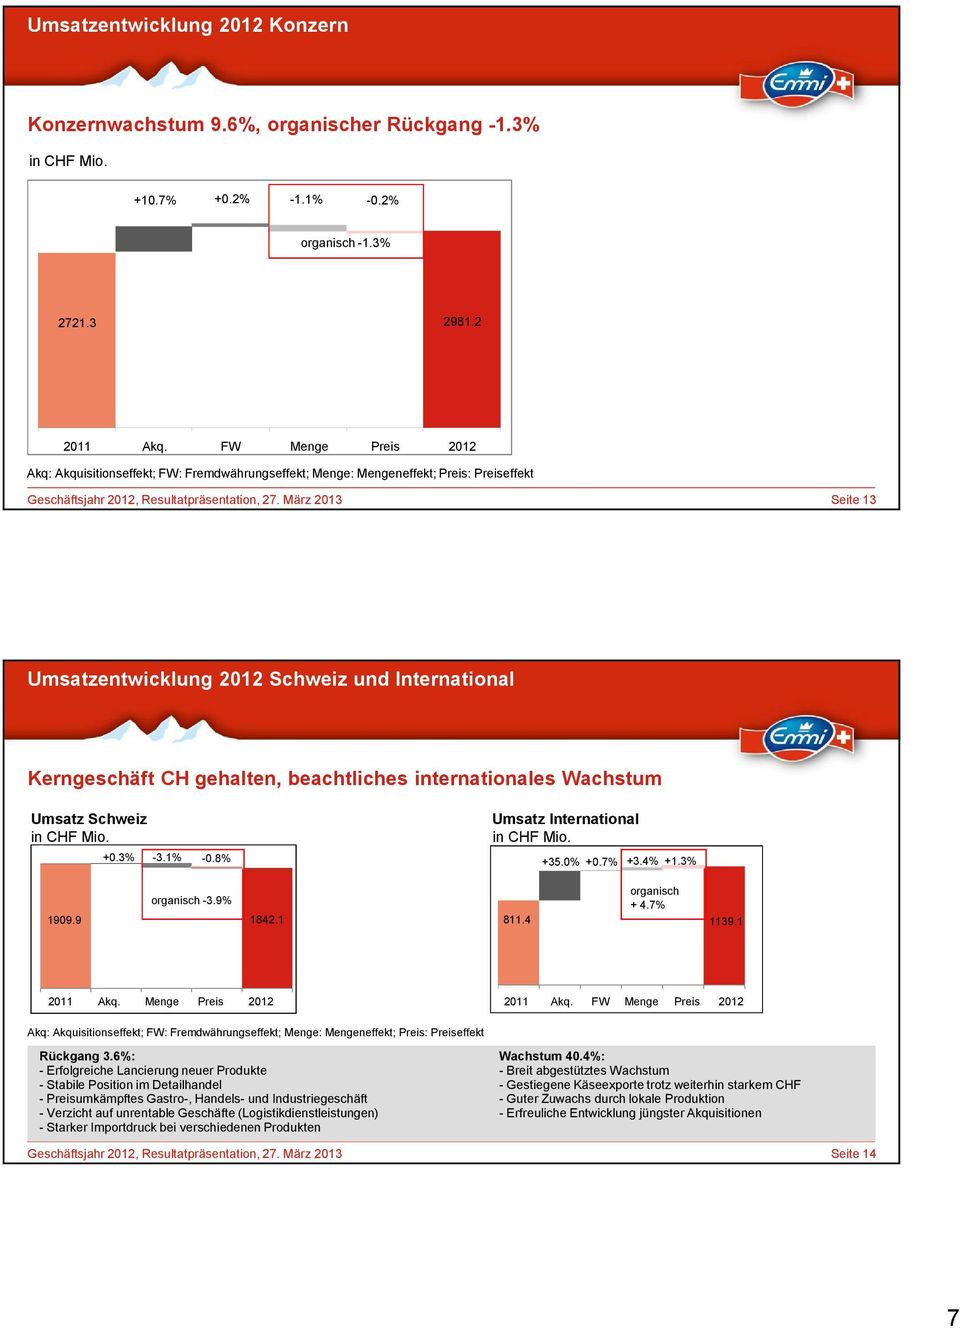 März 2013 Seite 13 Umsatzentwicklung 2012 Schweiz und International Kerngeschäft CH gehalten, beachtliches internationales Wachstum Umsatz Schweiz in CHF Mio. +0.3% -3.1% -0.8% organisch -3.9% 1909.